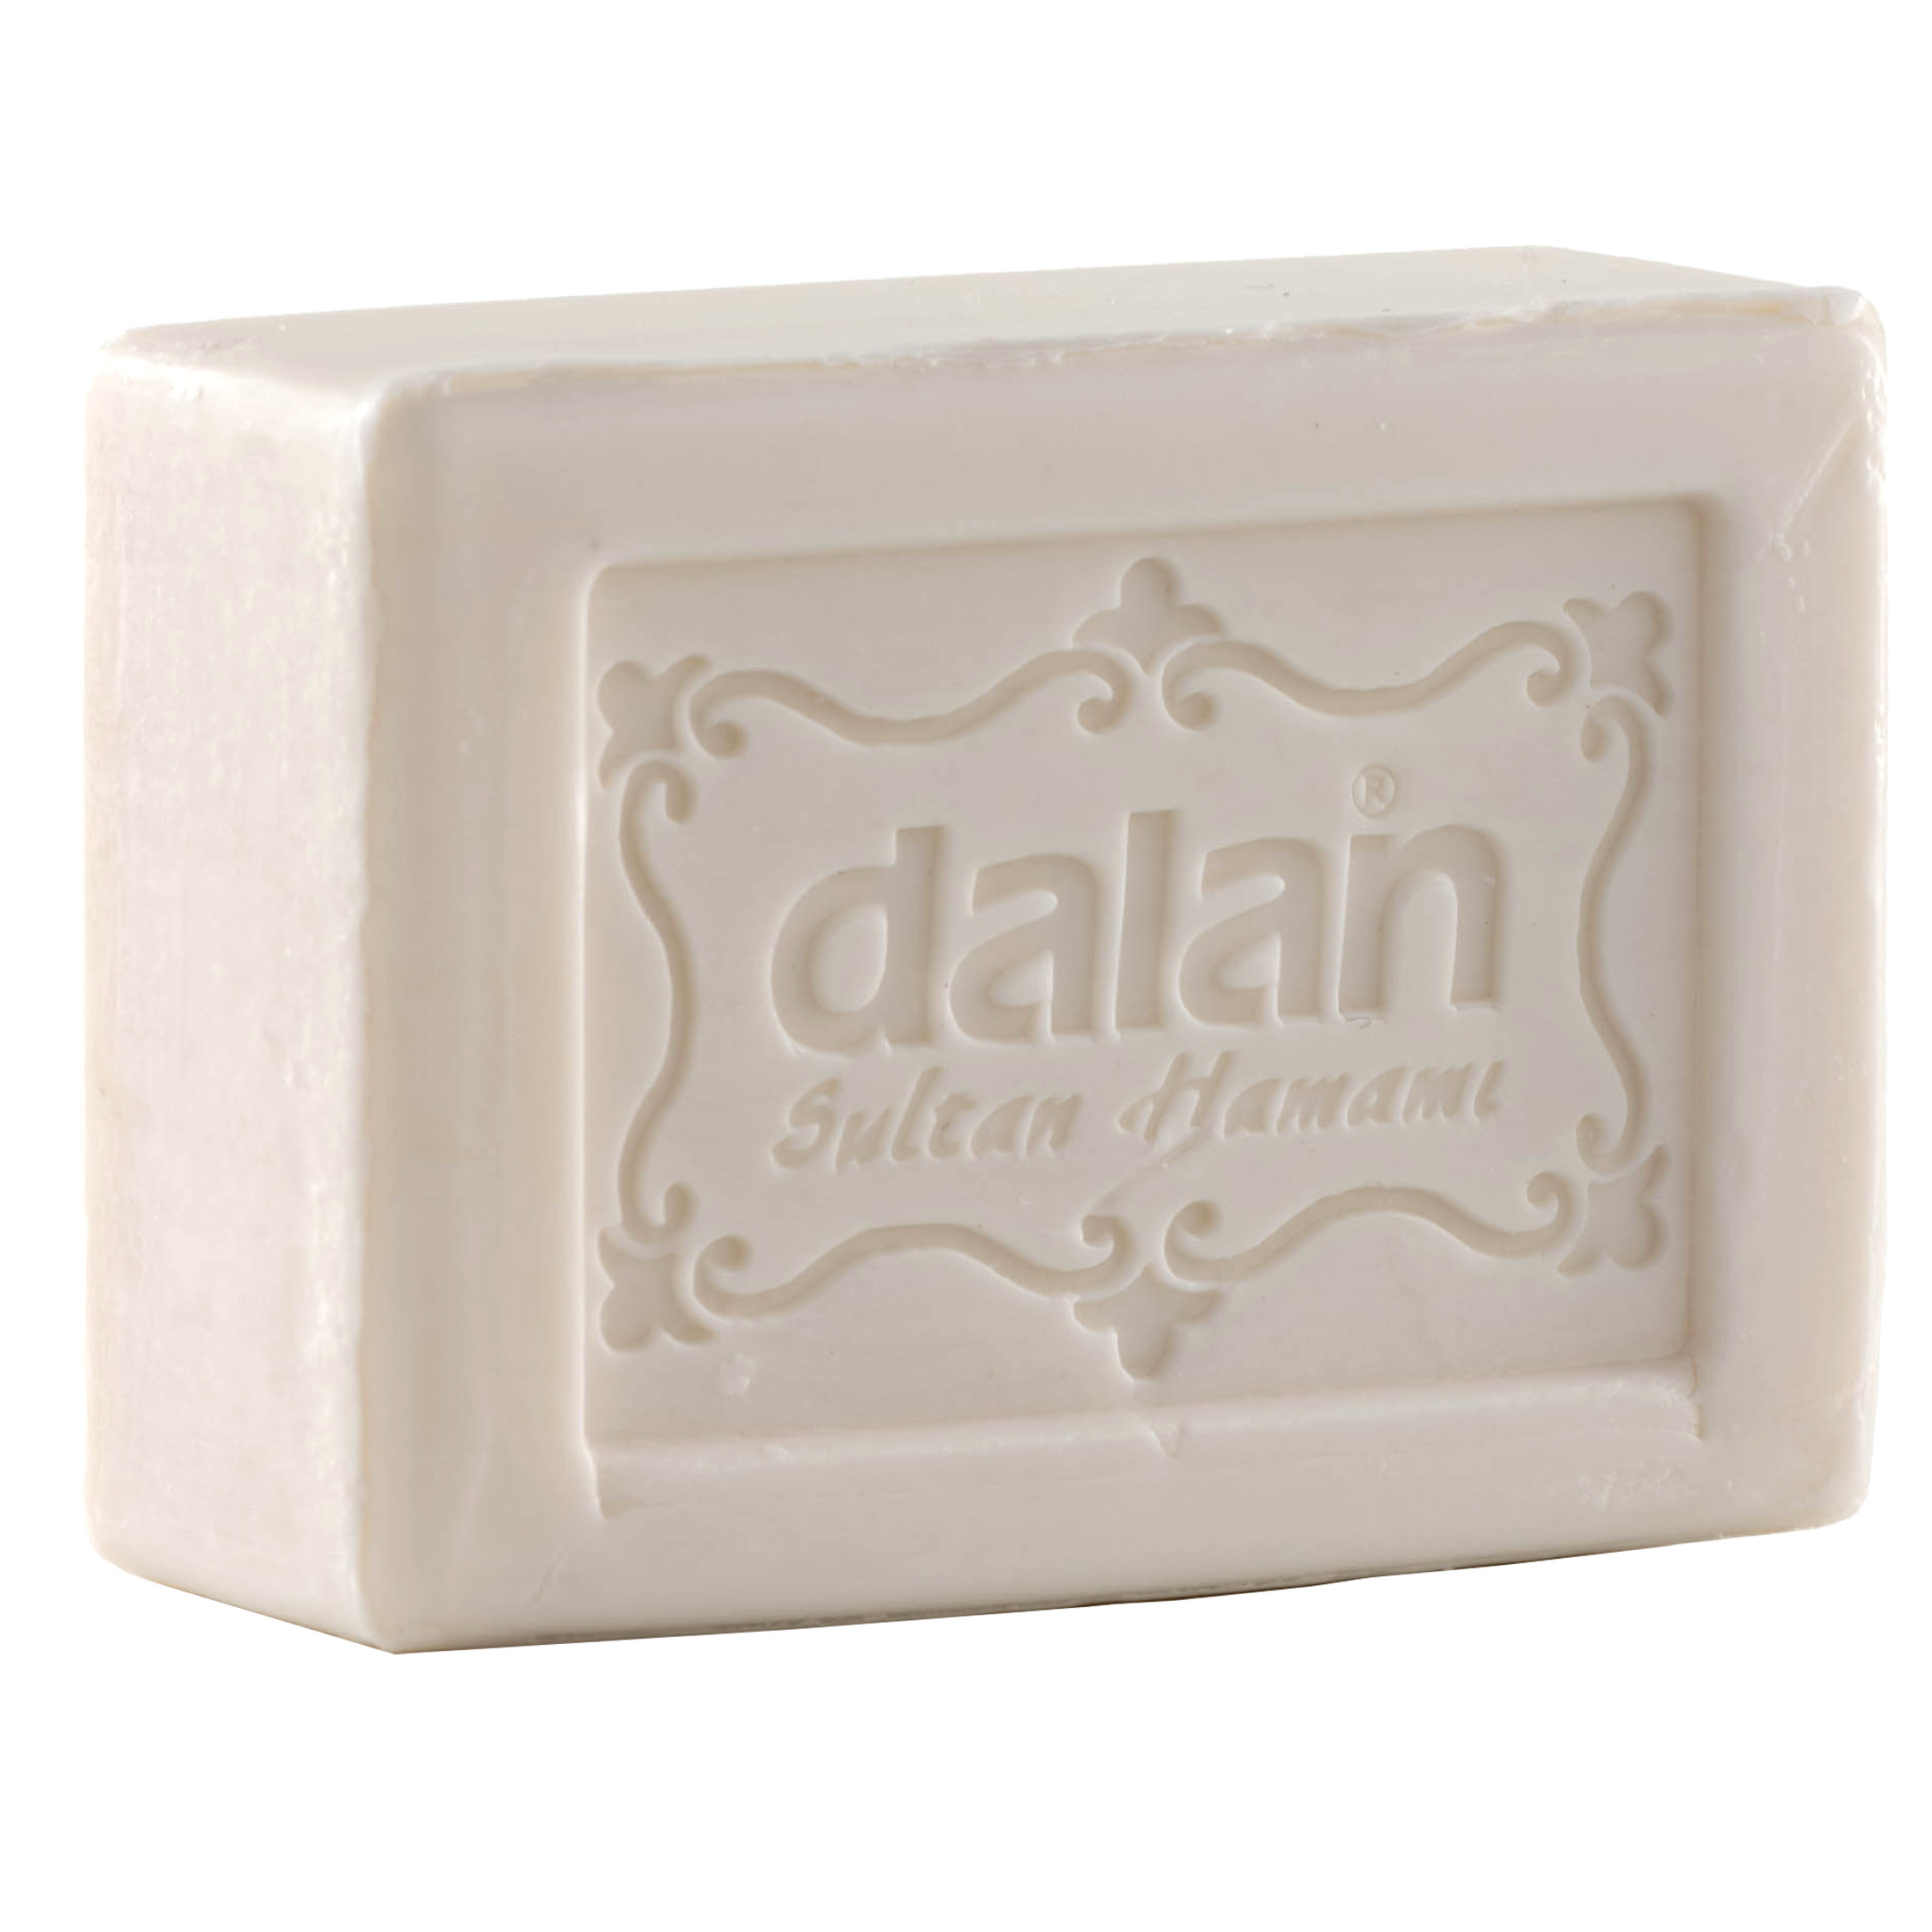 Sultan Hamam Soap